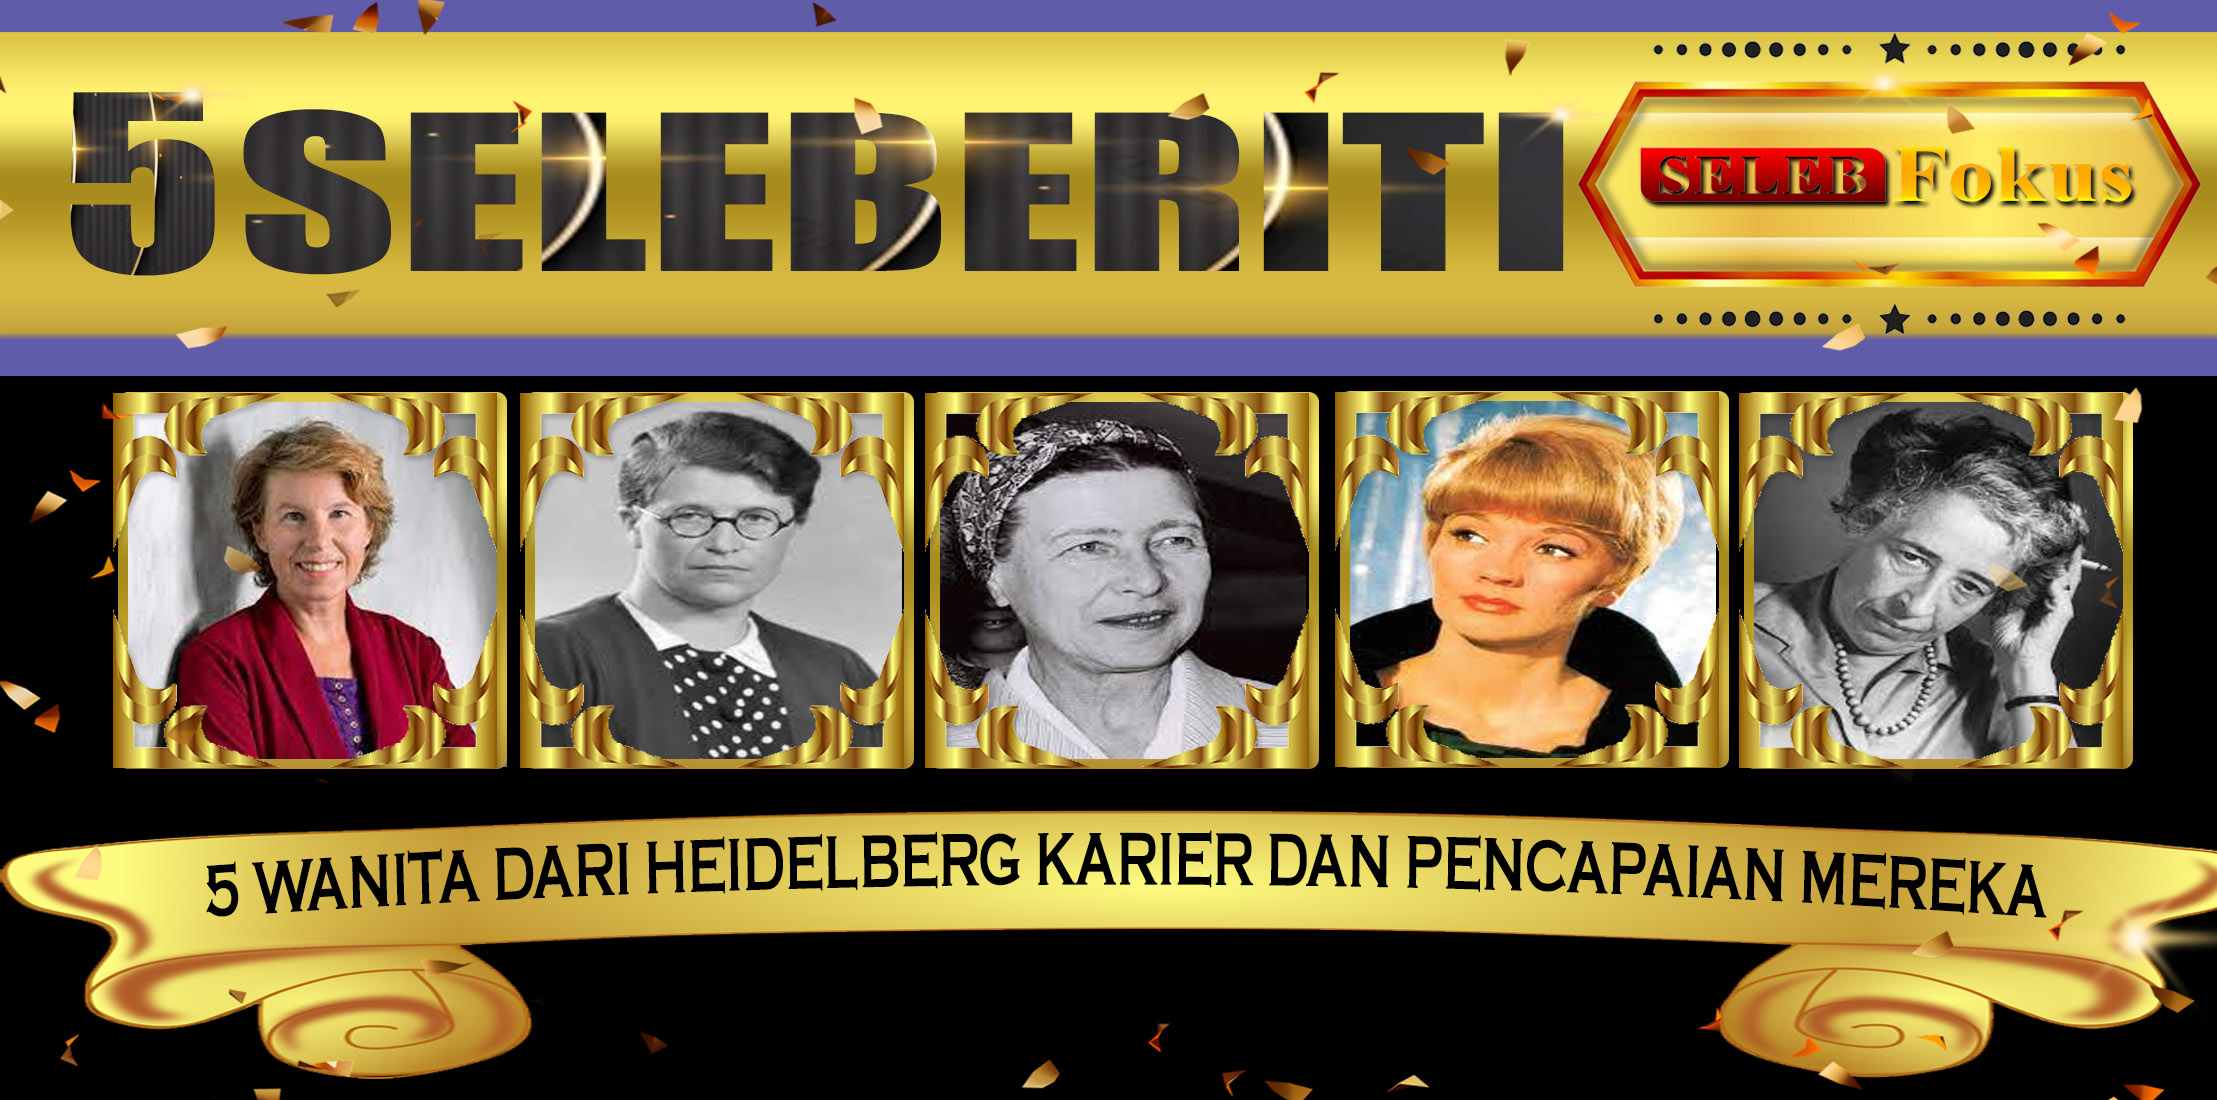 5 Wanita dari Heidelberg Karier dan Pencapaian Mereka